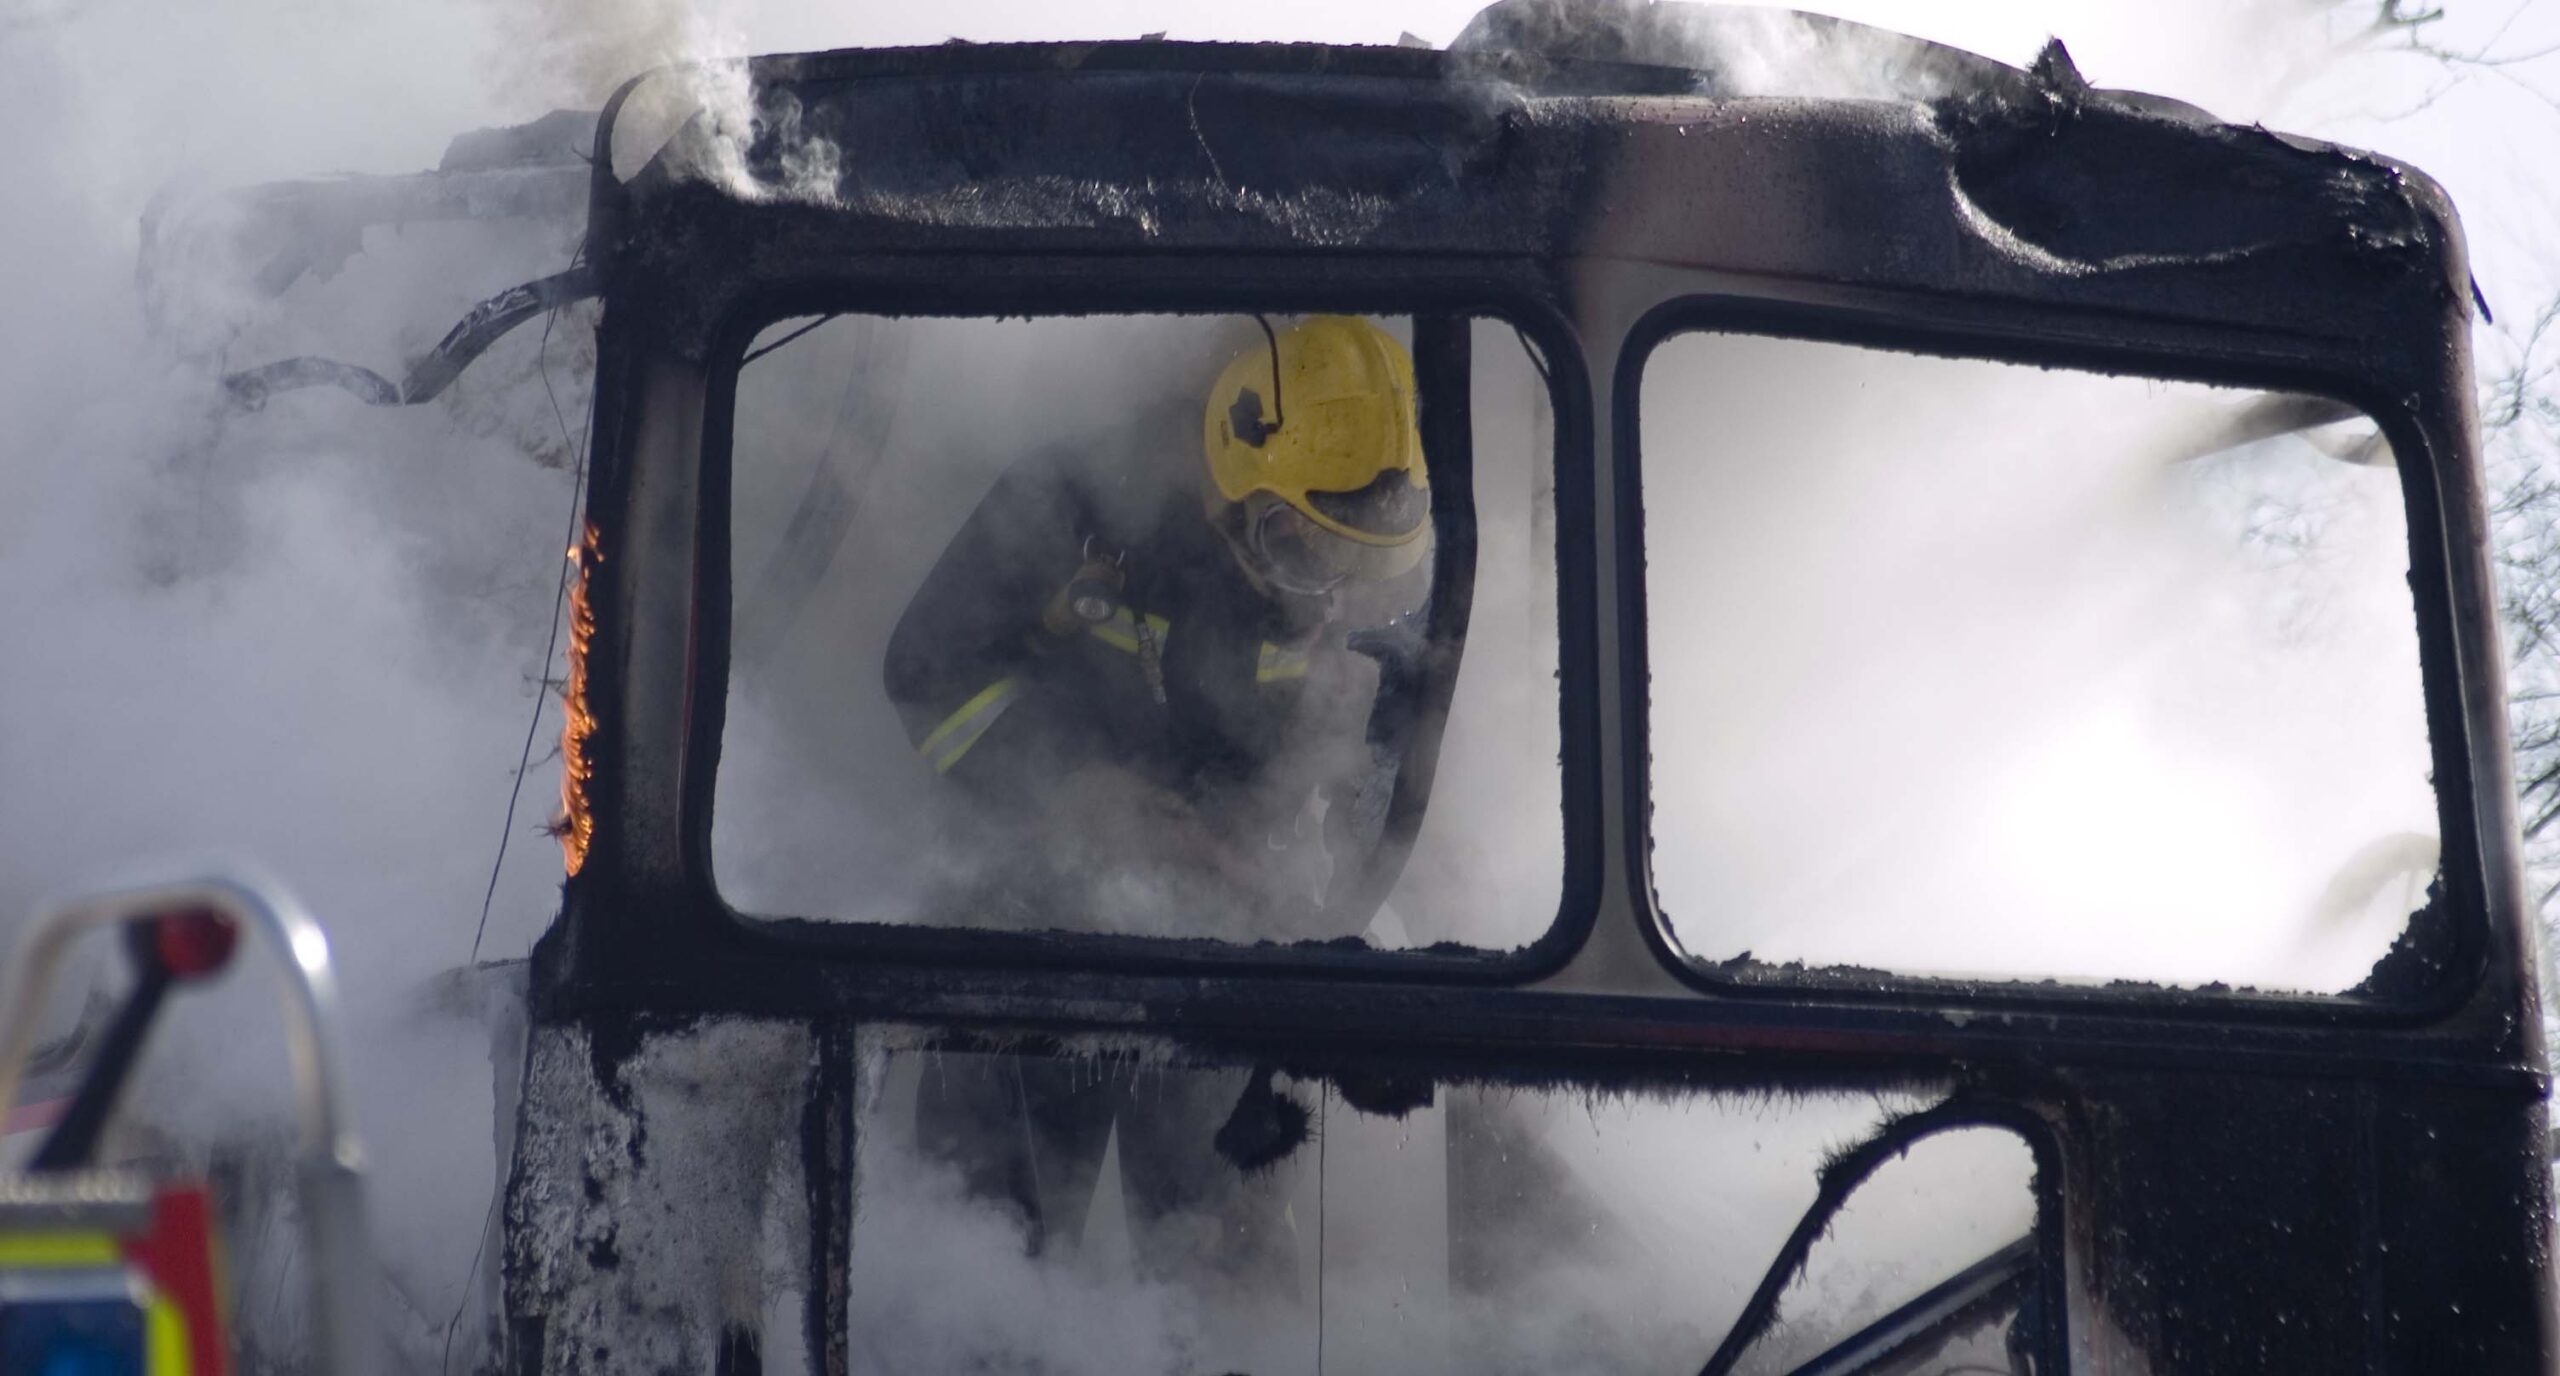 Completamente calcinado: autobús se incendia dejando 12 muertos y 43 heridos en India